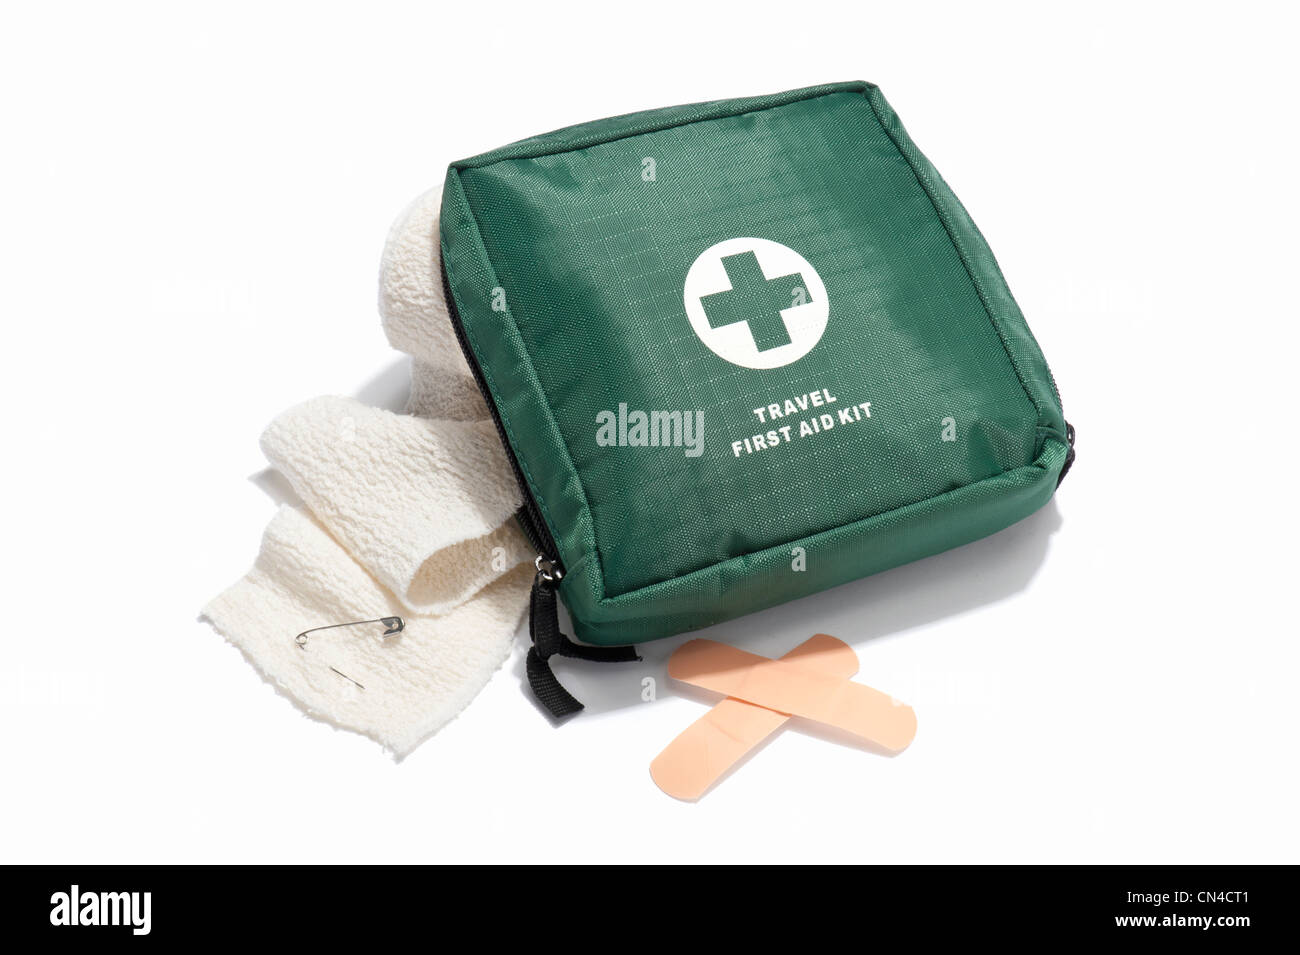 Travel first aid immagini e fotografie stock ad alta risoluzione - Alamy